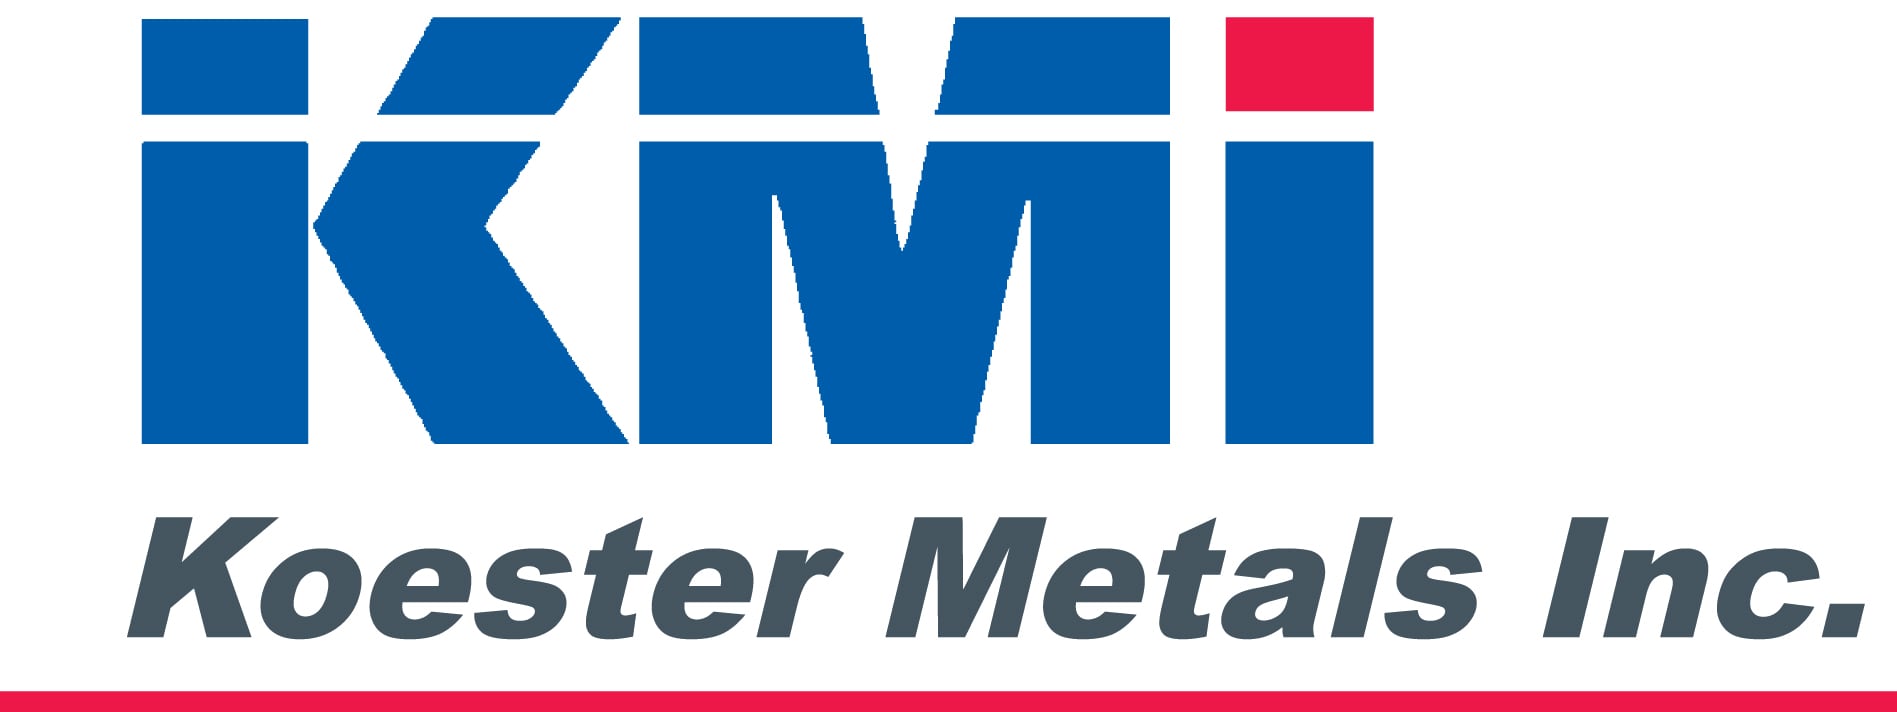 Koester Metals Inc